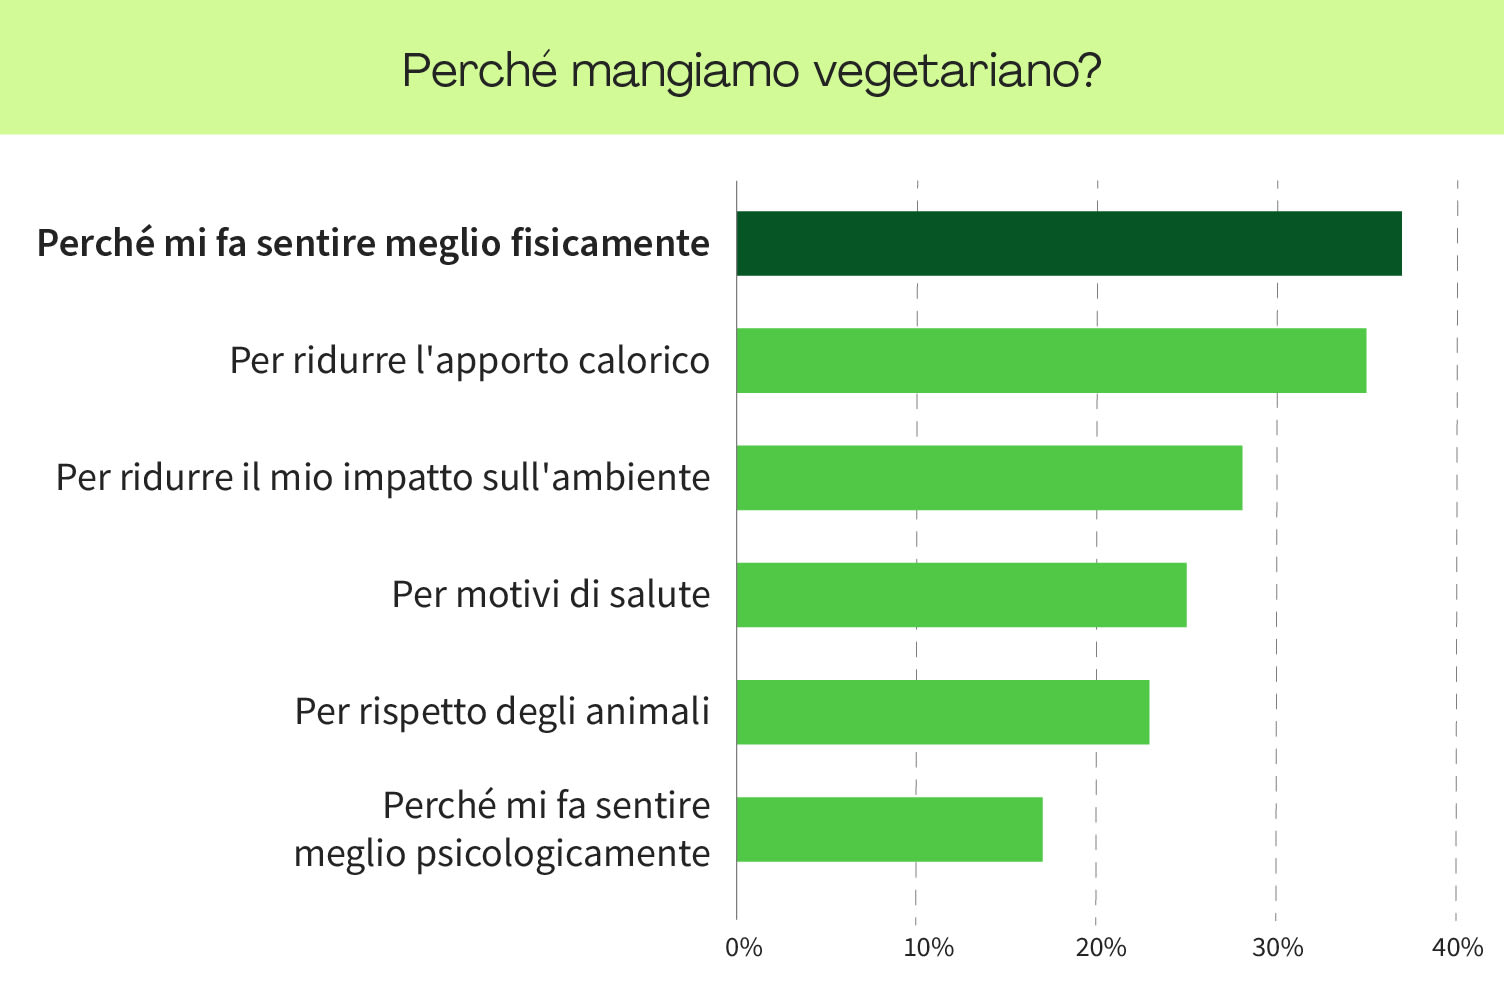 <h2>Perché gli italiani mangiano vegetariano?</h2>